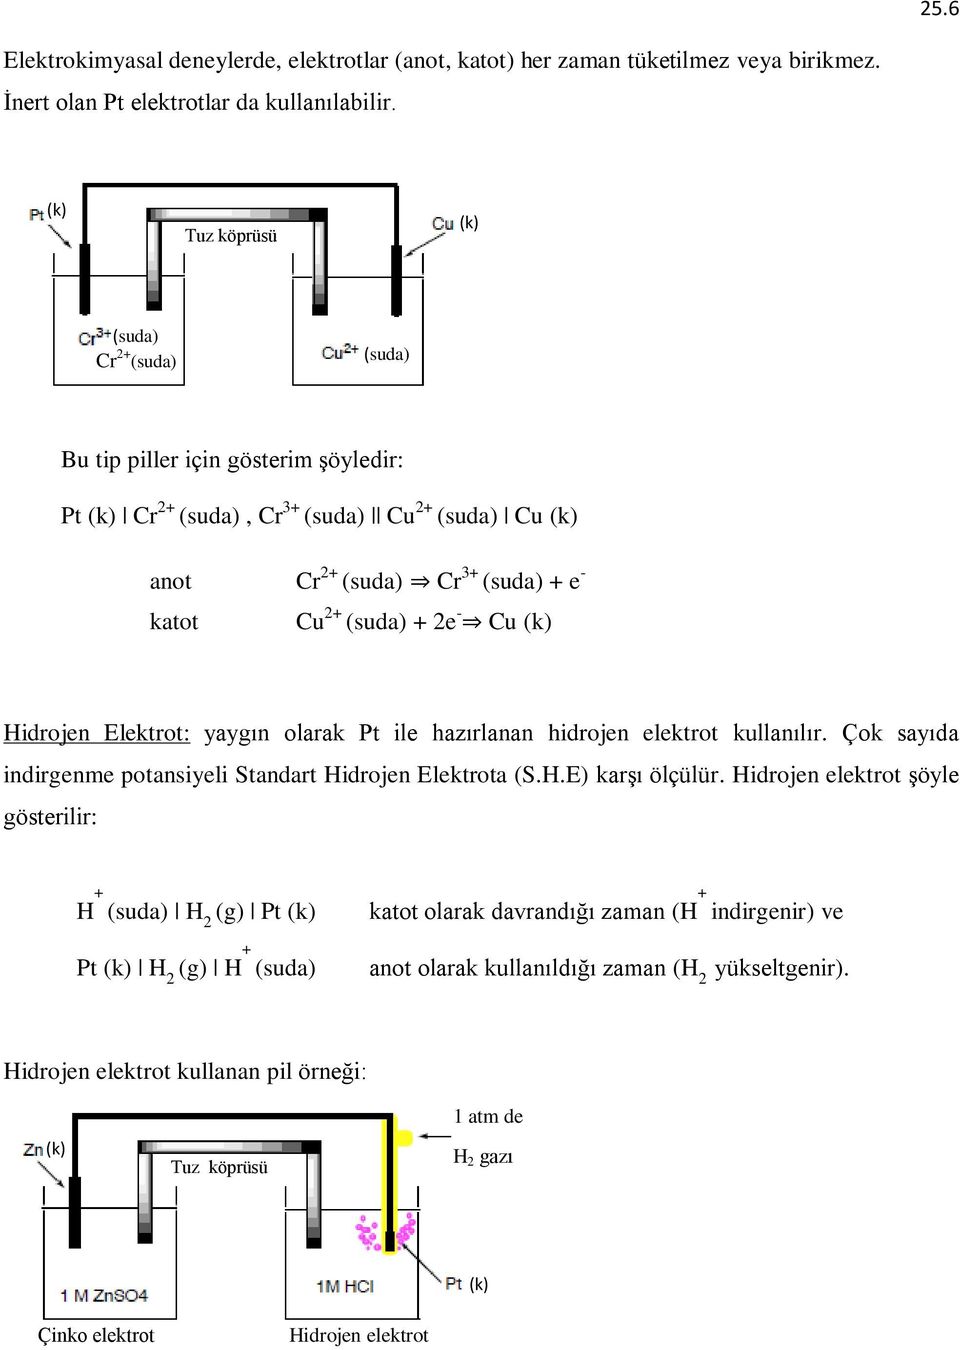 - Cu (k) Hidrojen Elektrot: yaygın olarak Pt ile hazırlanan hidrojen elektrot kullanılır. Çok sayıda indirgenme potansiyeli Standart Hidrojen Elektrota (S.H.E) karşı ölçülür.